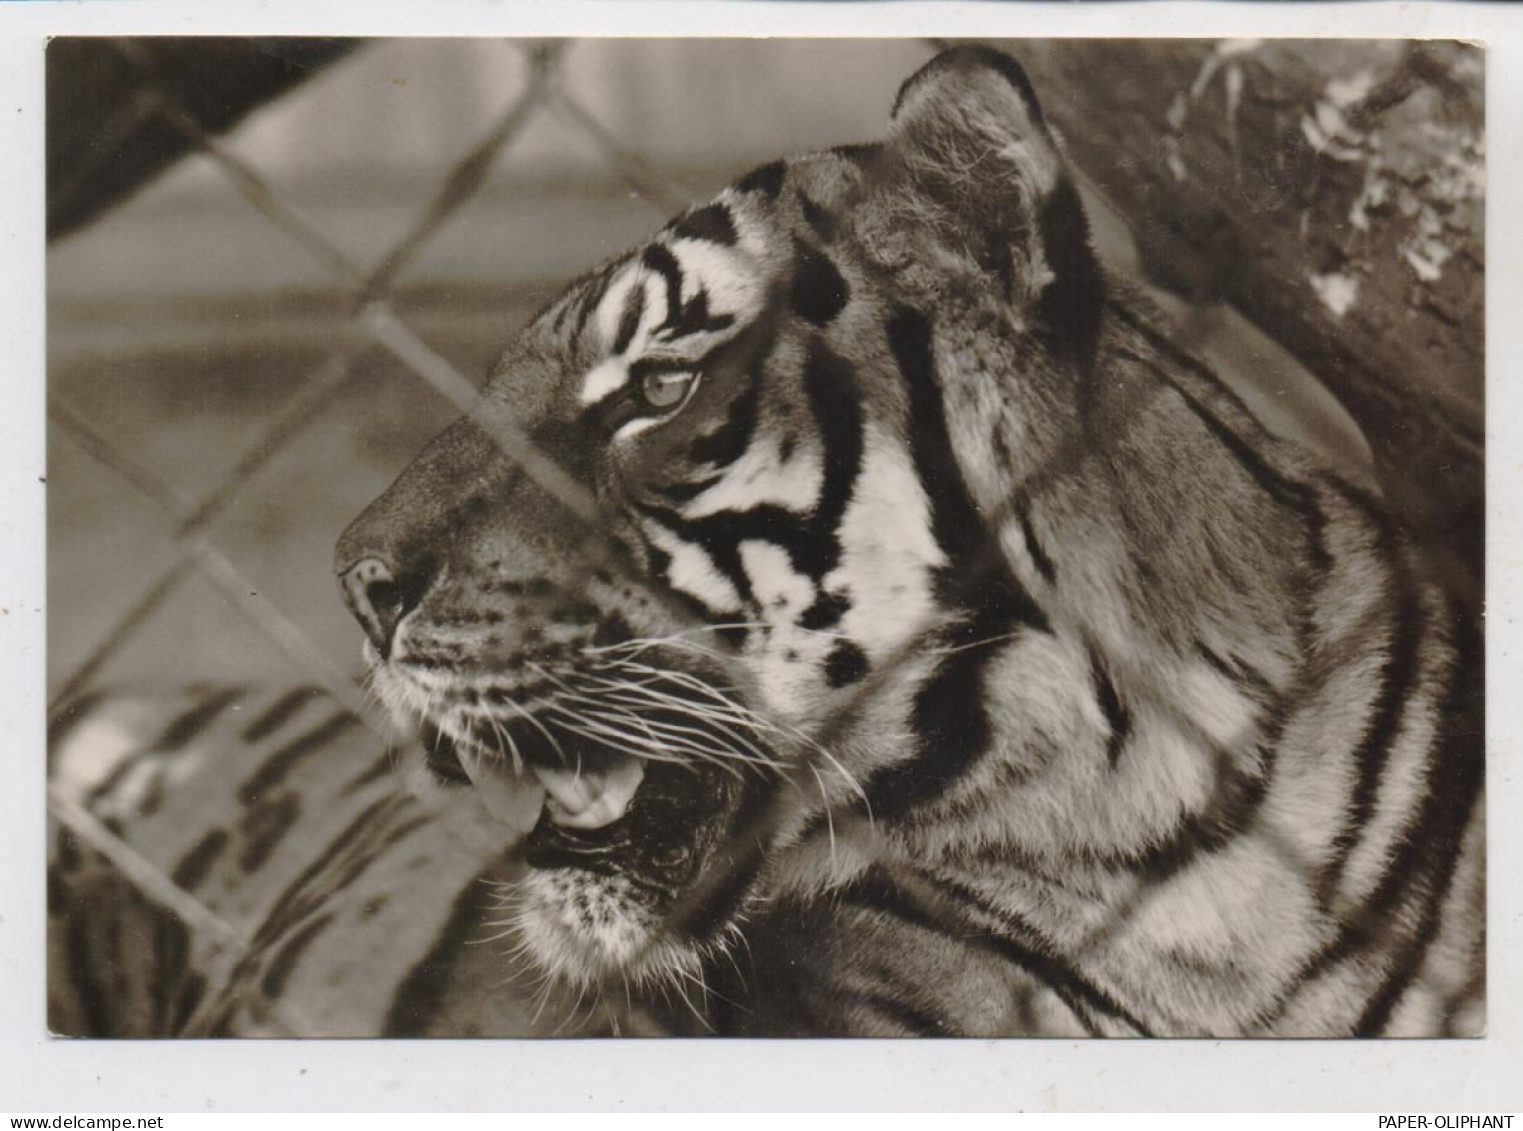 1000 BERLIN - FRIEDRICHSFELD, Tierpark Berlin (Zoo), Bengal - Tiger - Hohenschönhausen